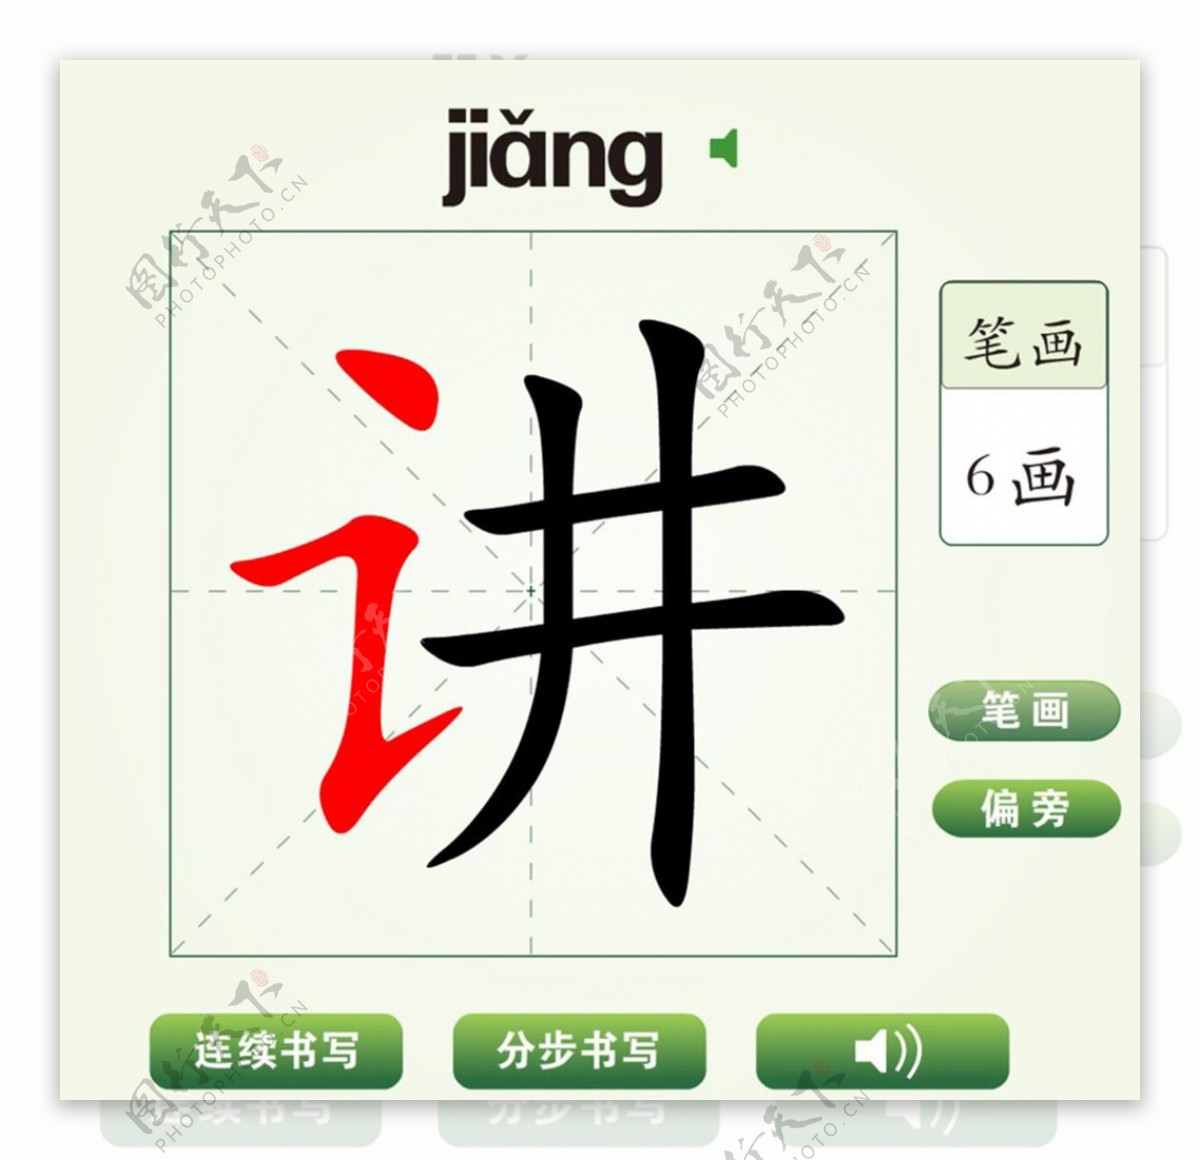 中国汉字讲字笔画教学动画视频